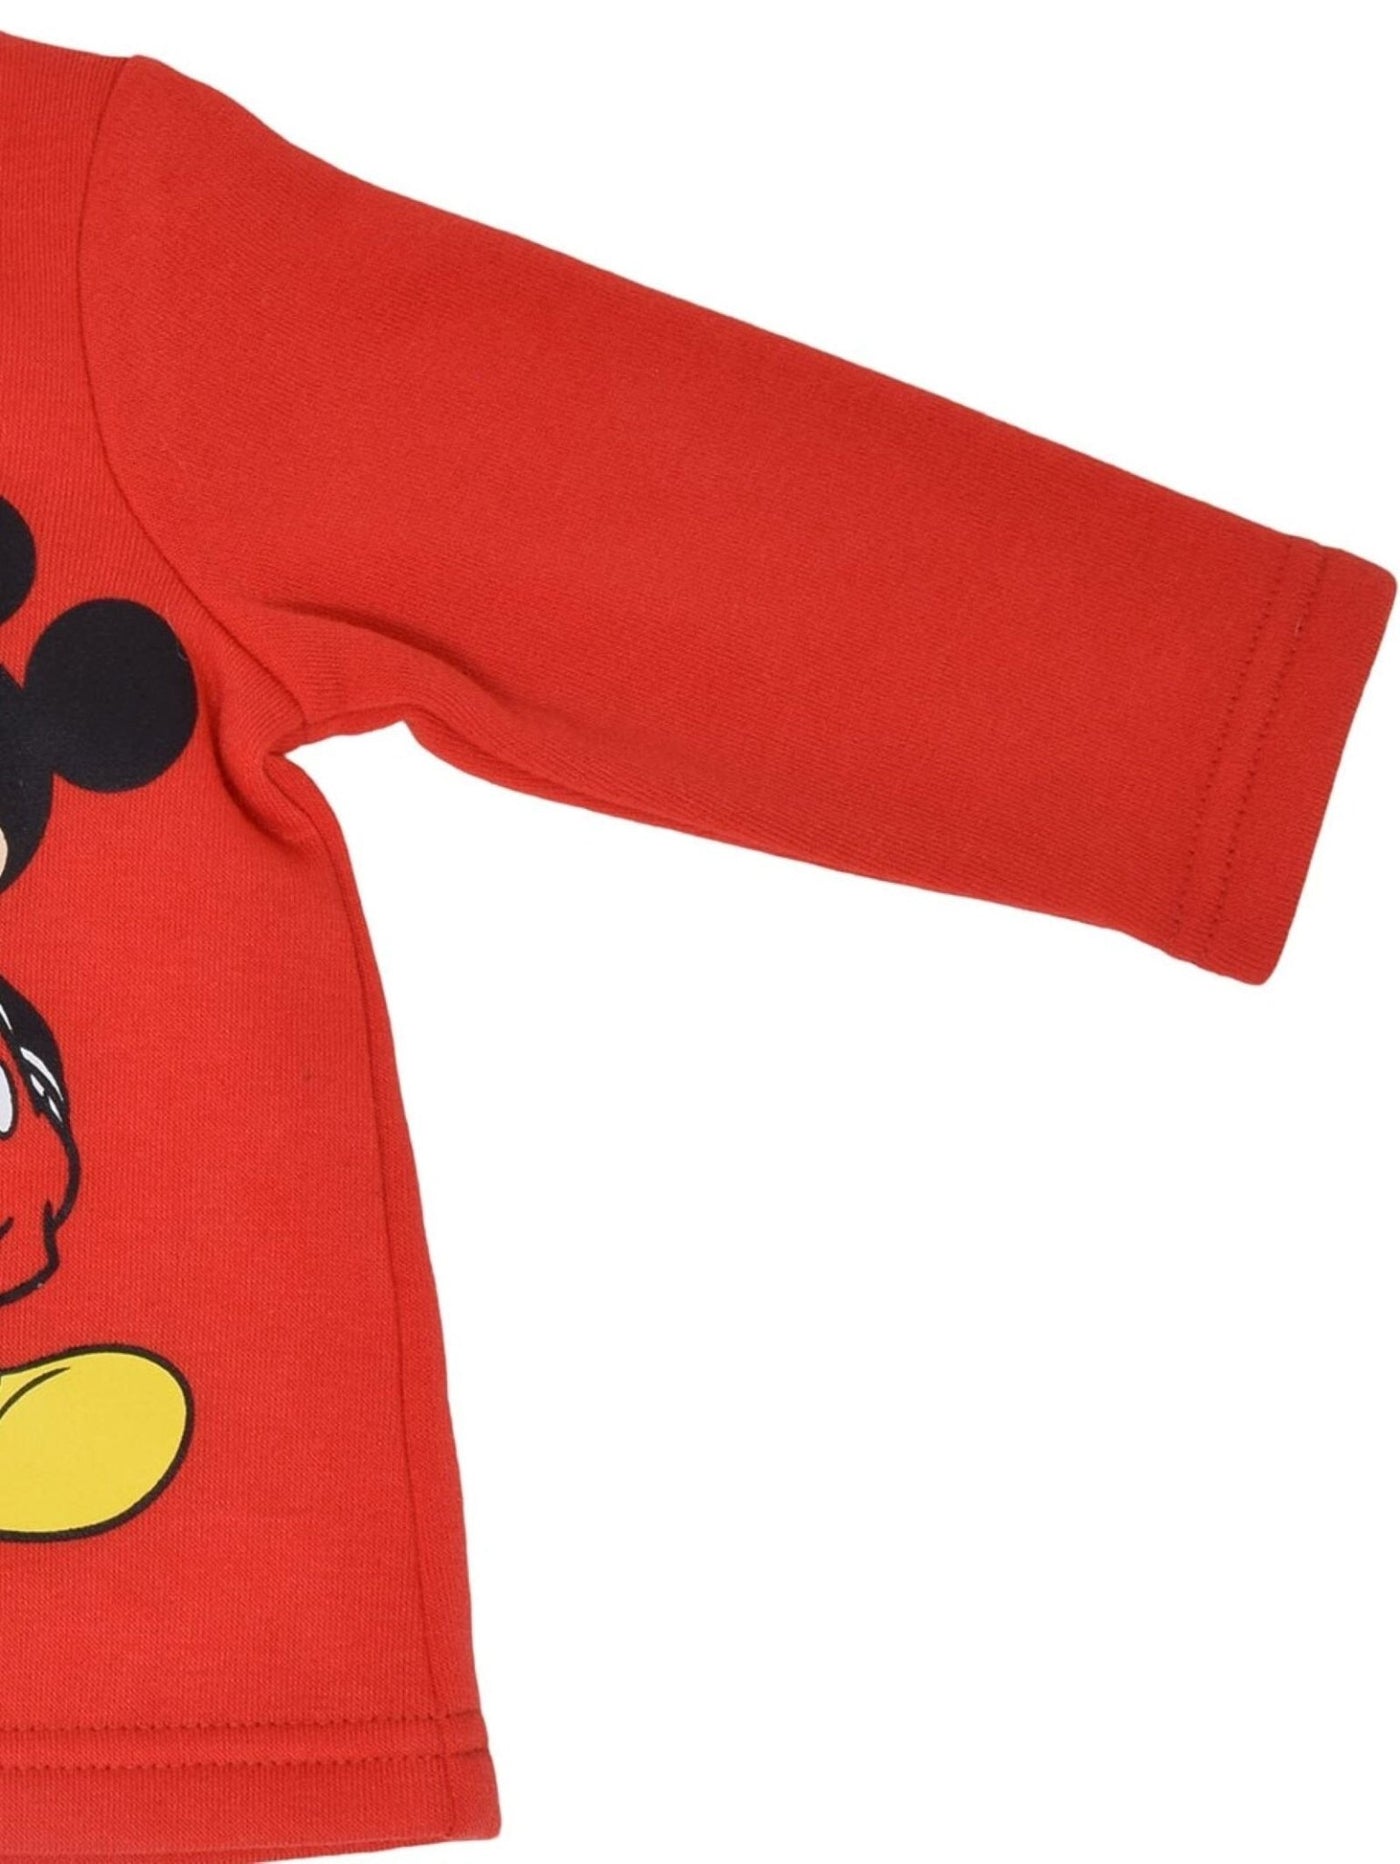 Disney Mickey Mouse Fleece Jacket and Pants - imagikids